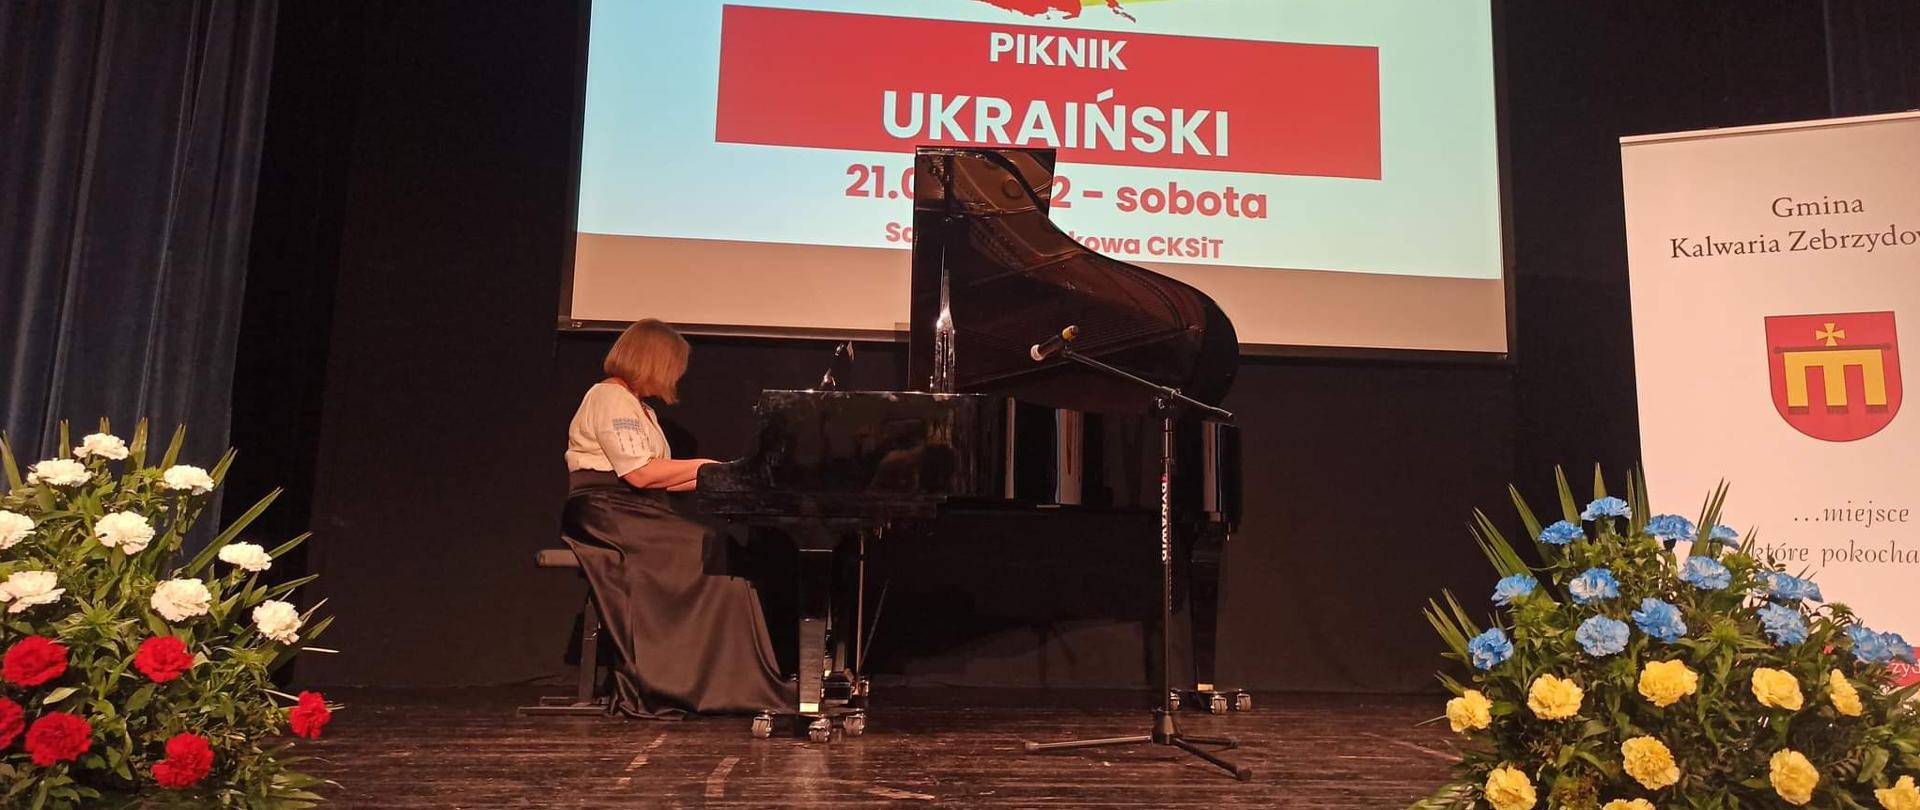 W centrum zdjęcia kobieta grająca na fortepianie, w tle plansza z napisem Piknik Ukraiński, po bokach bukiety kwiatów. 